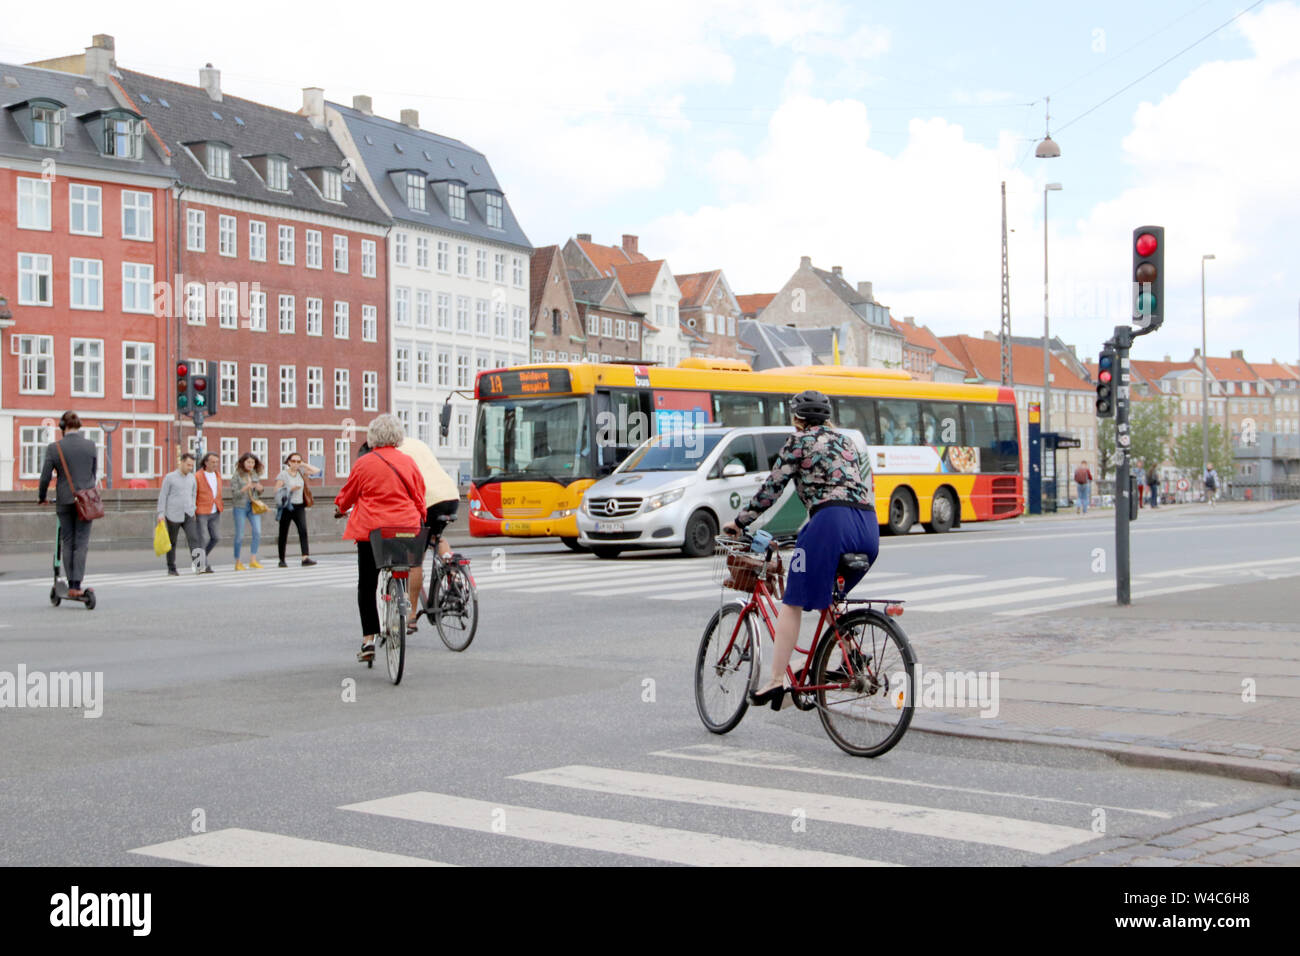 Diversi tipi di trasporti per spostarsi nel centro di Copenaghen vicino al canal Nybrogade. Foto Stock